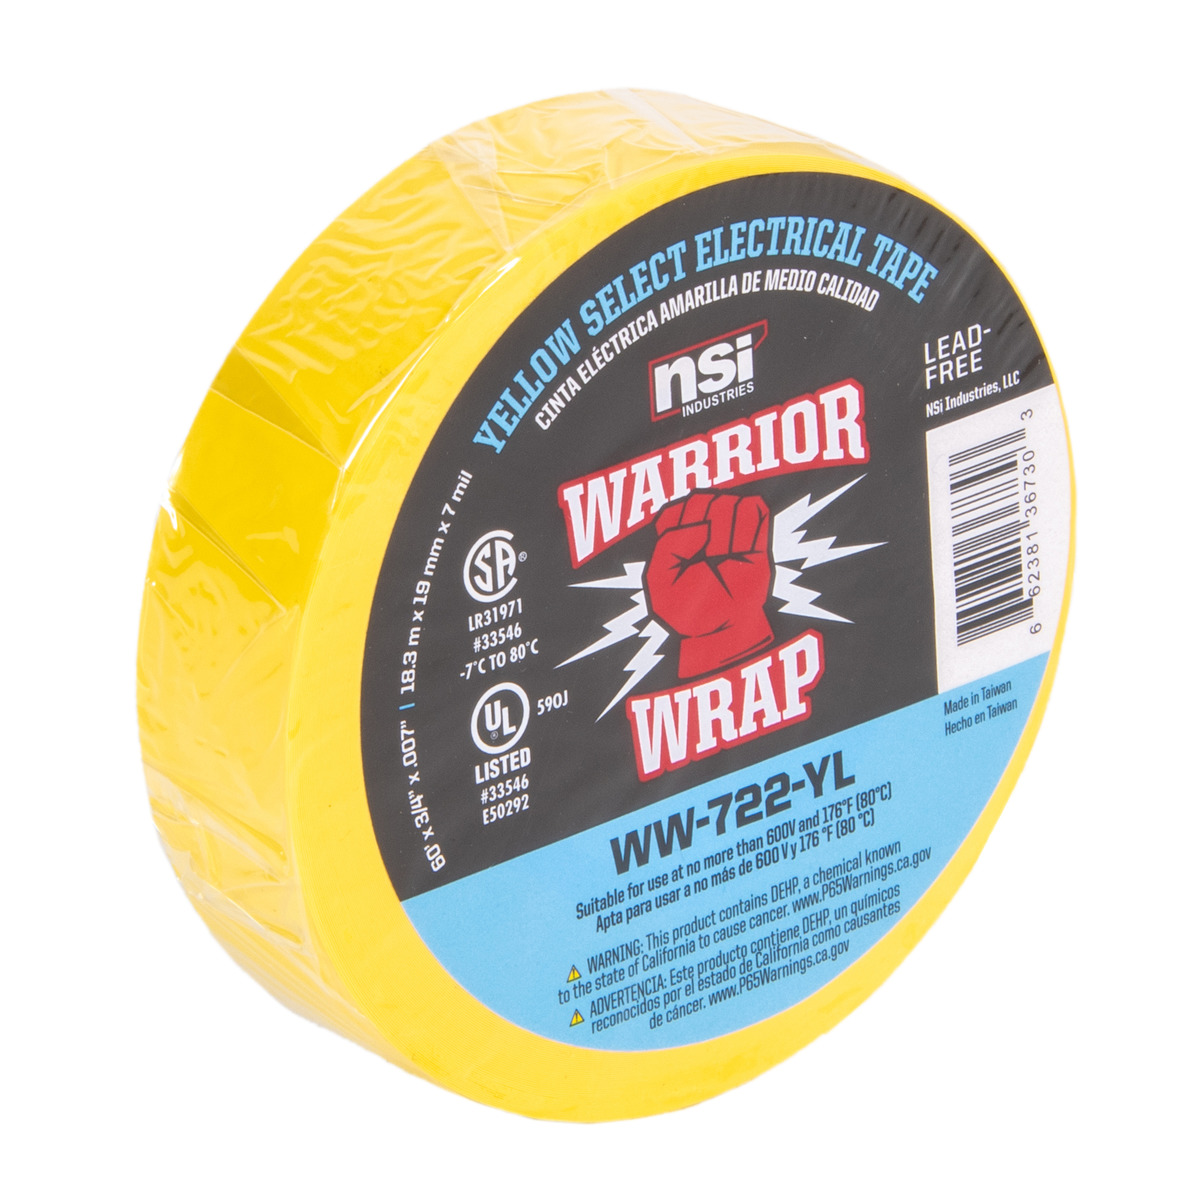 WarriorWrap General 3/4 in x 60 ft 7 mil Vinyl Electrical Tape Black 